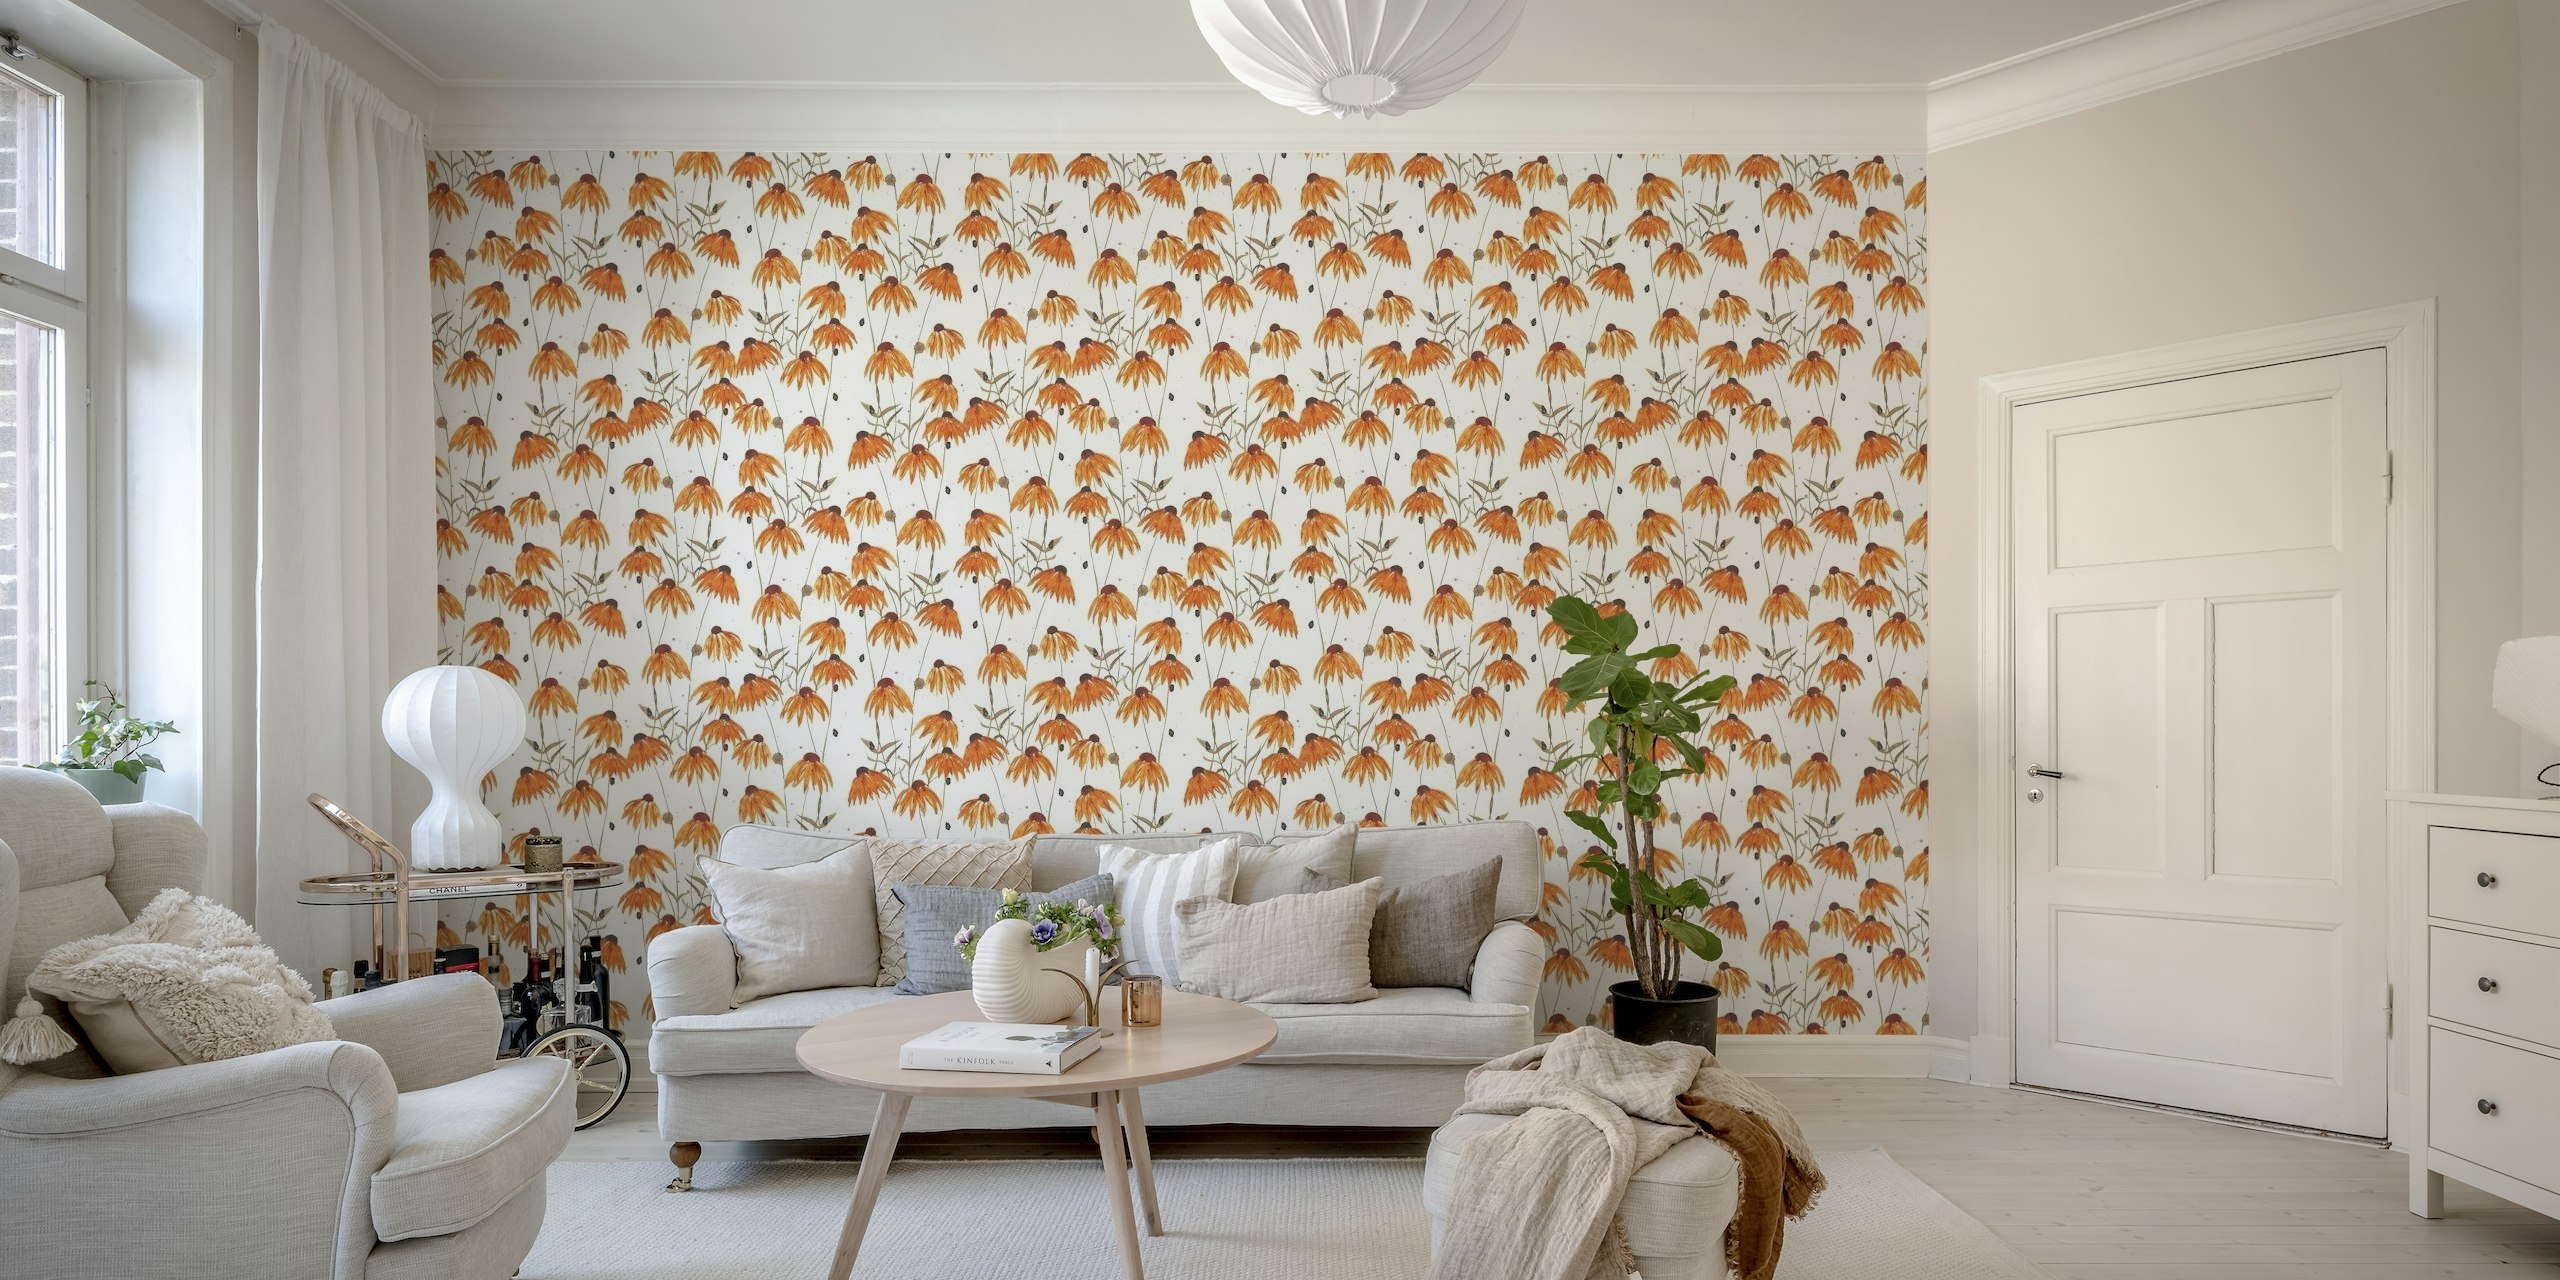 Fototapete „Orangefarbene Sonnenhüte“ mit einem Muster aus bunten Blumen auf einem sauberen weißen Hintergrund